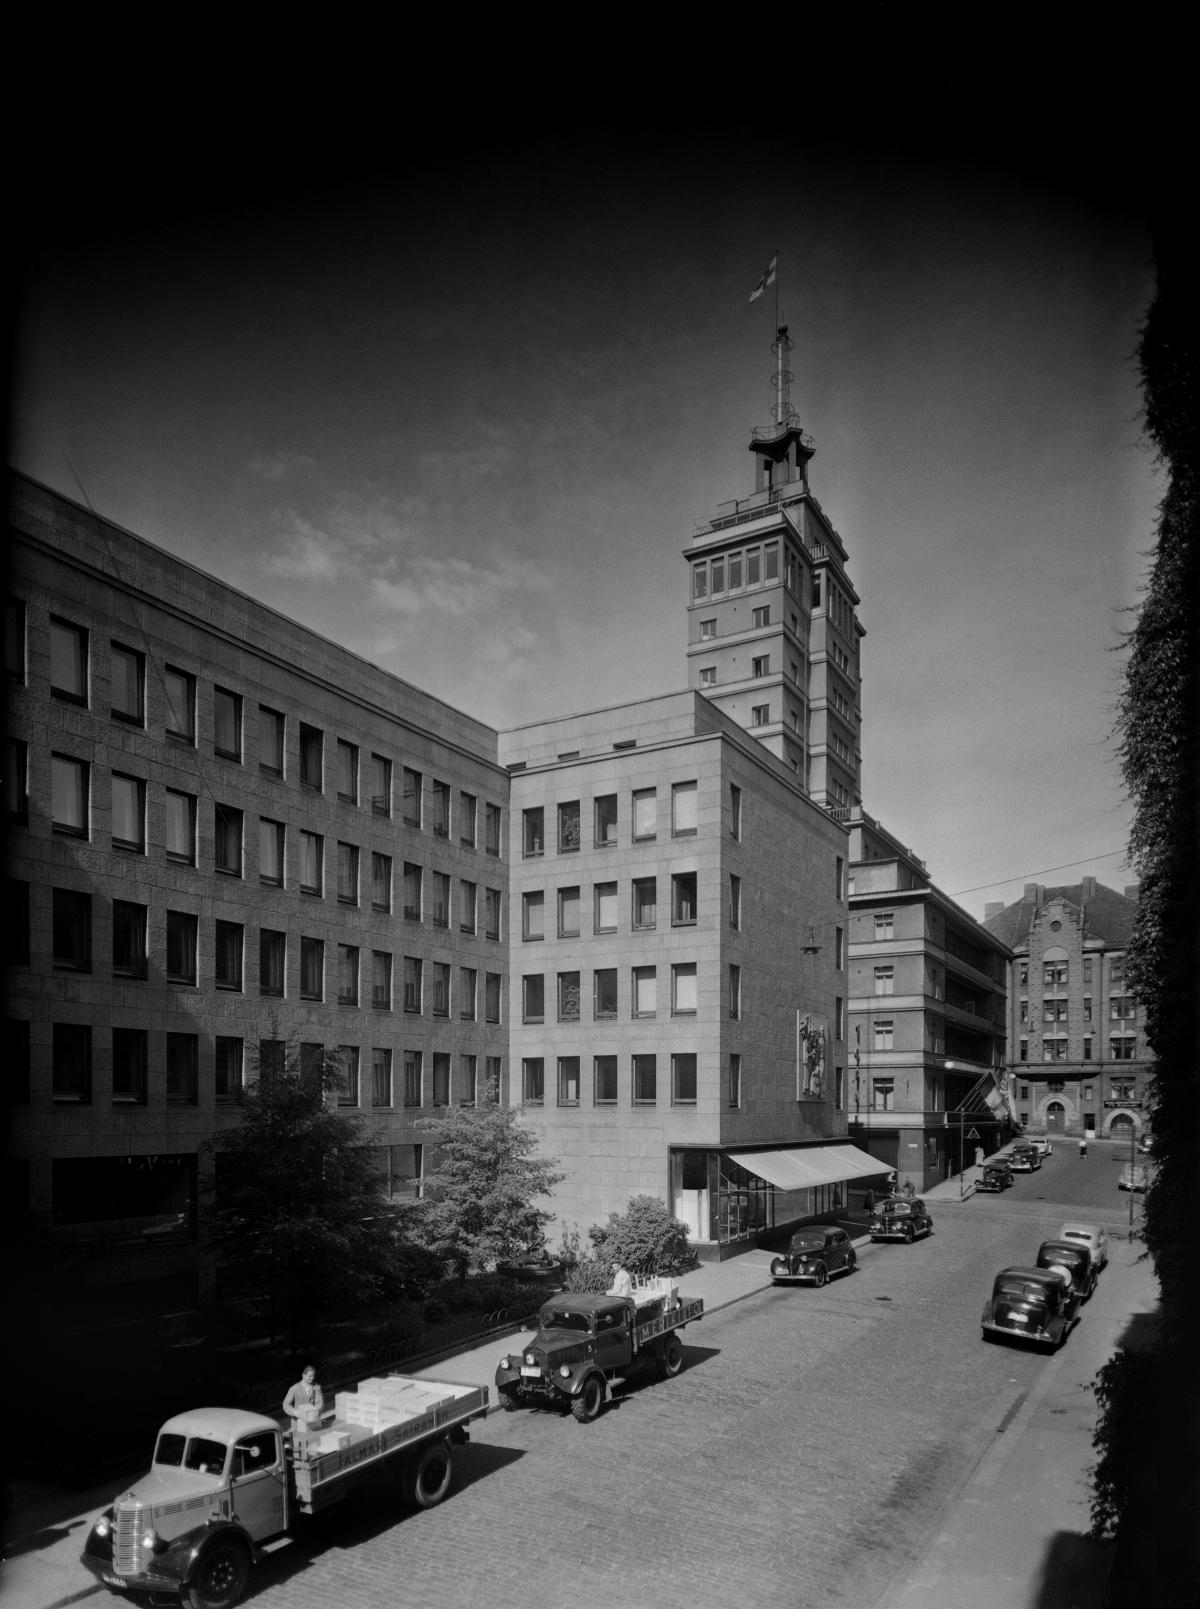 Hotelli Torni kuvattuna 1940-luvun lopulla.